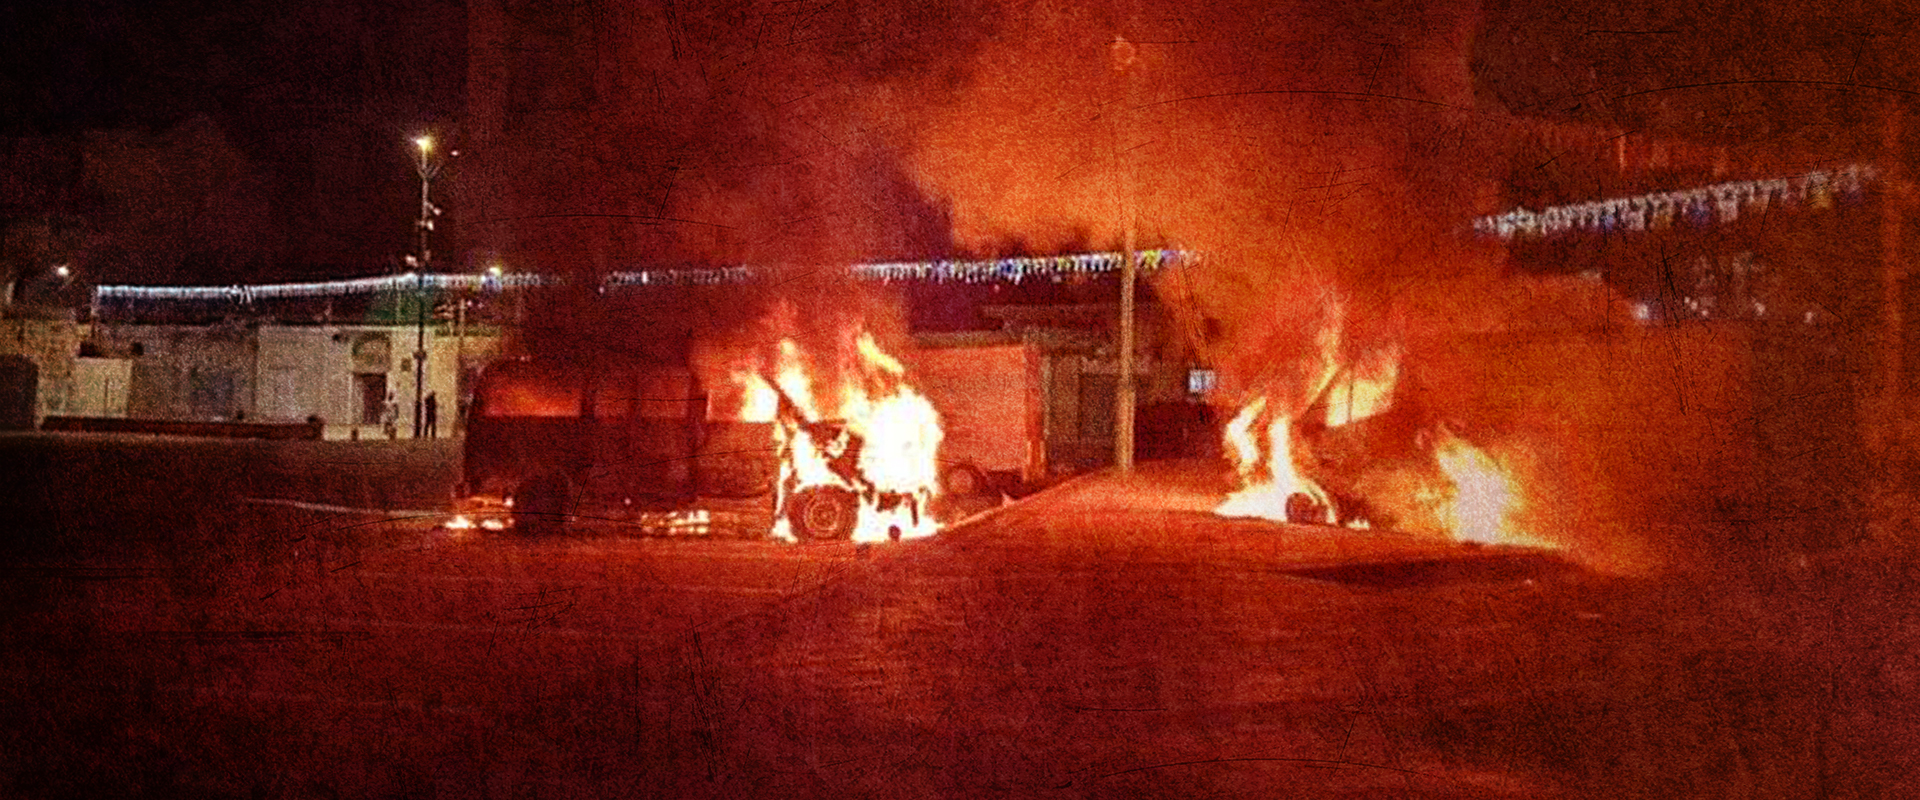 מצב חרום לוד שריפת רכבים ליד מסגד